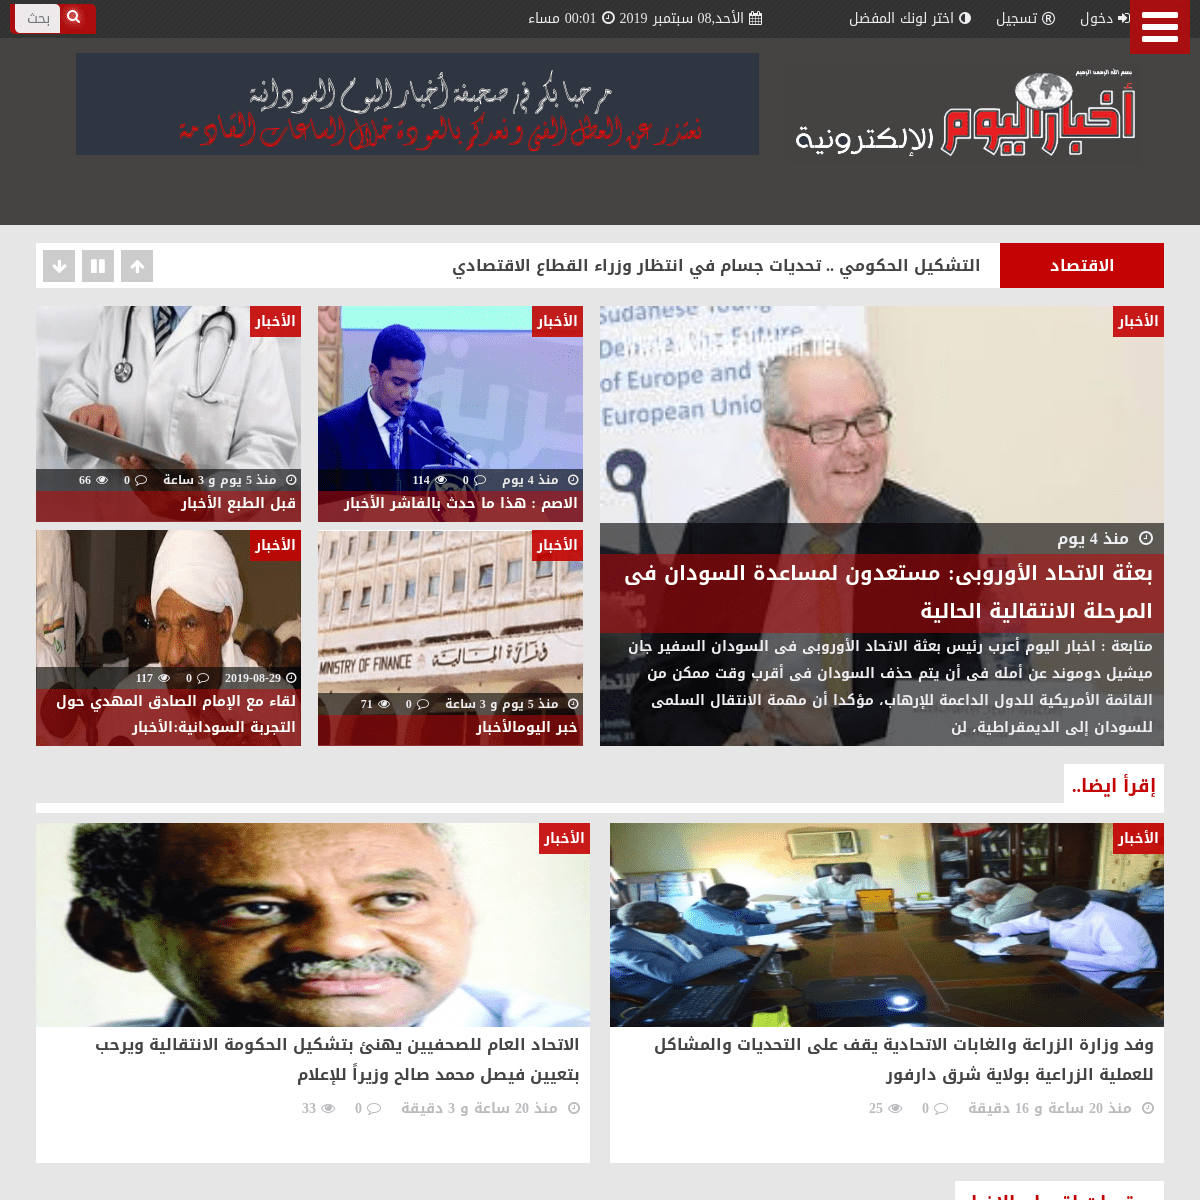 صحيفة اخبار اليوم السودانية الالكترونية